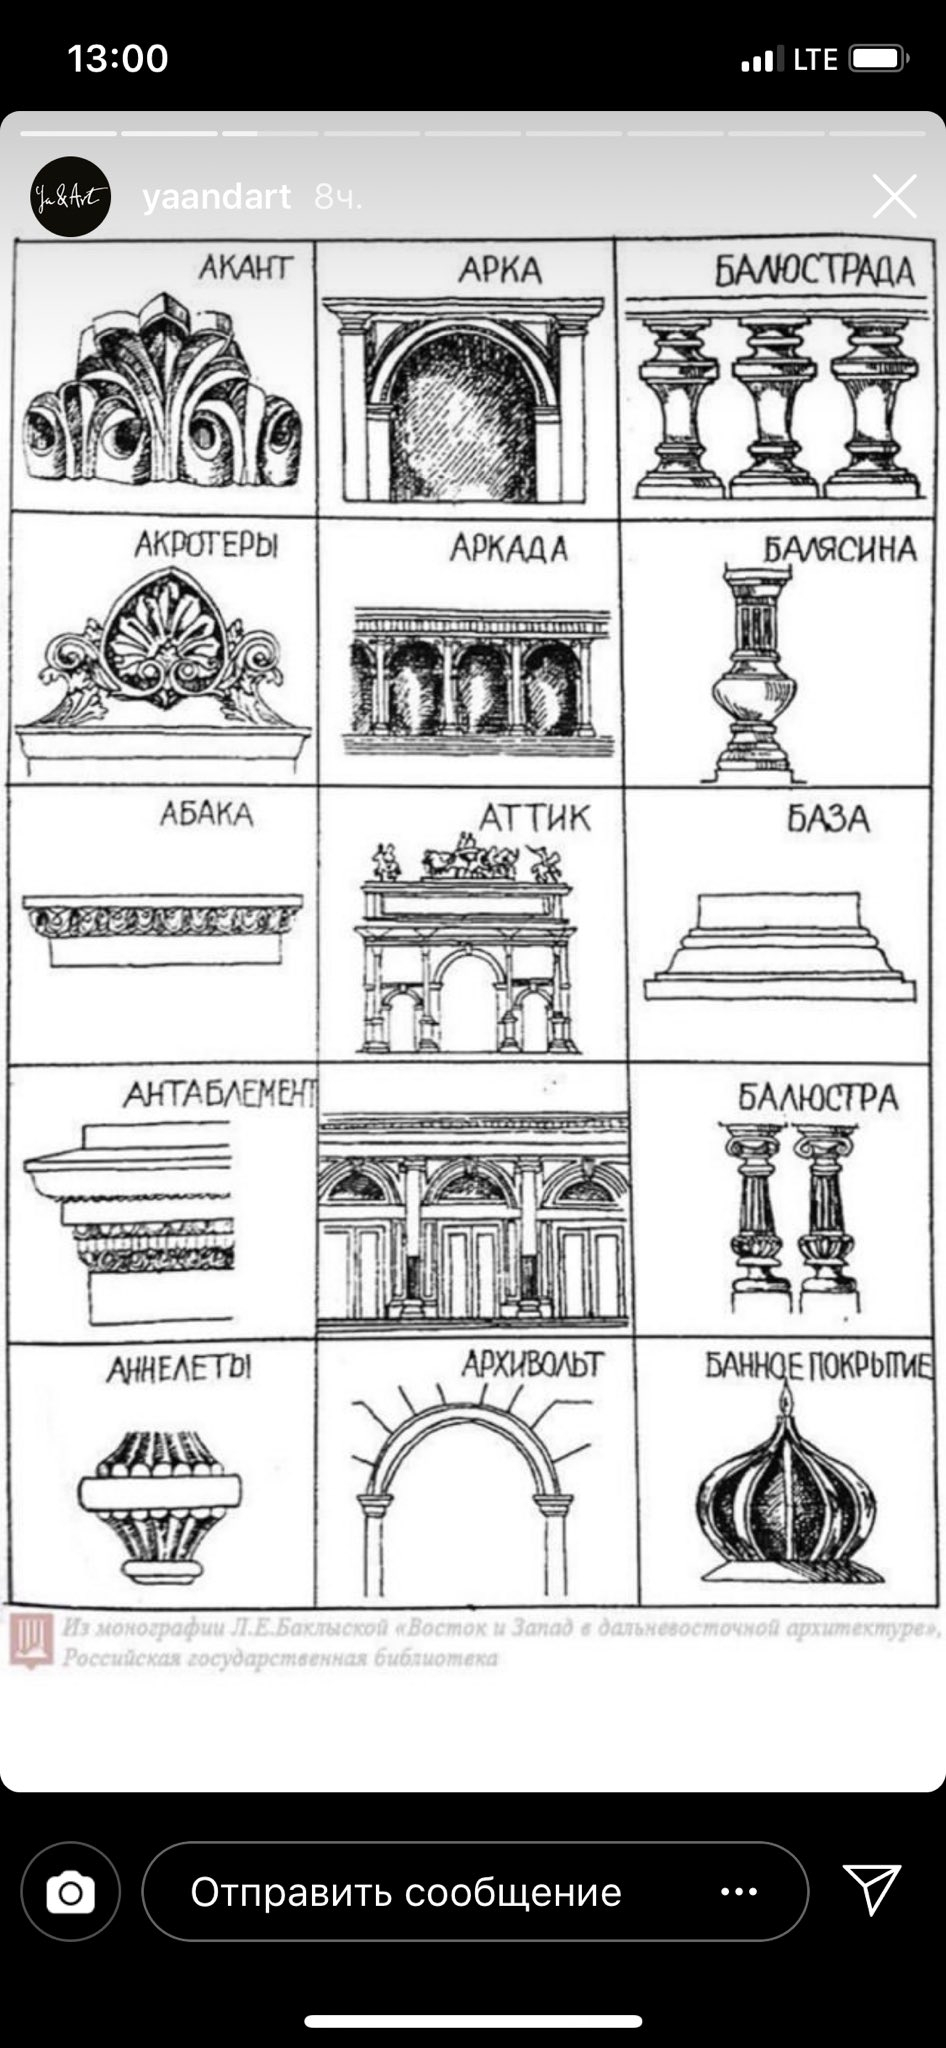 Характерные элементы различных архитектурных стилей таблица